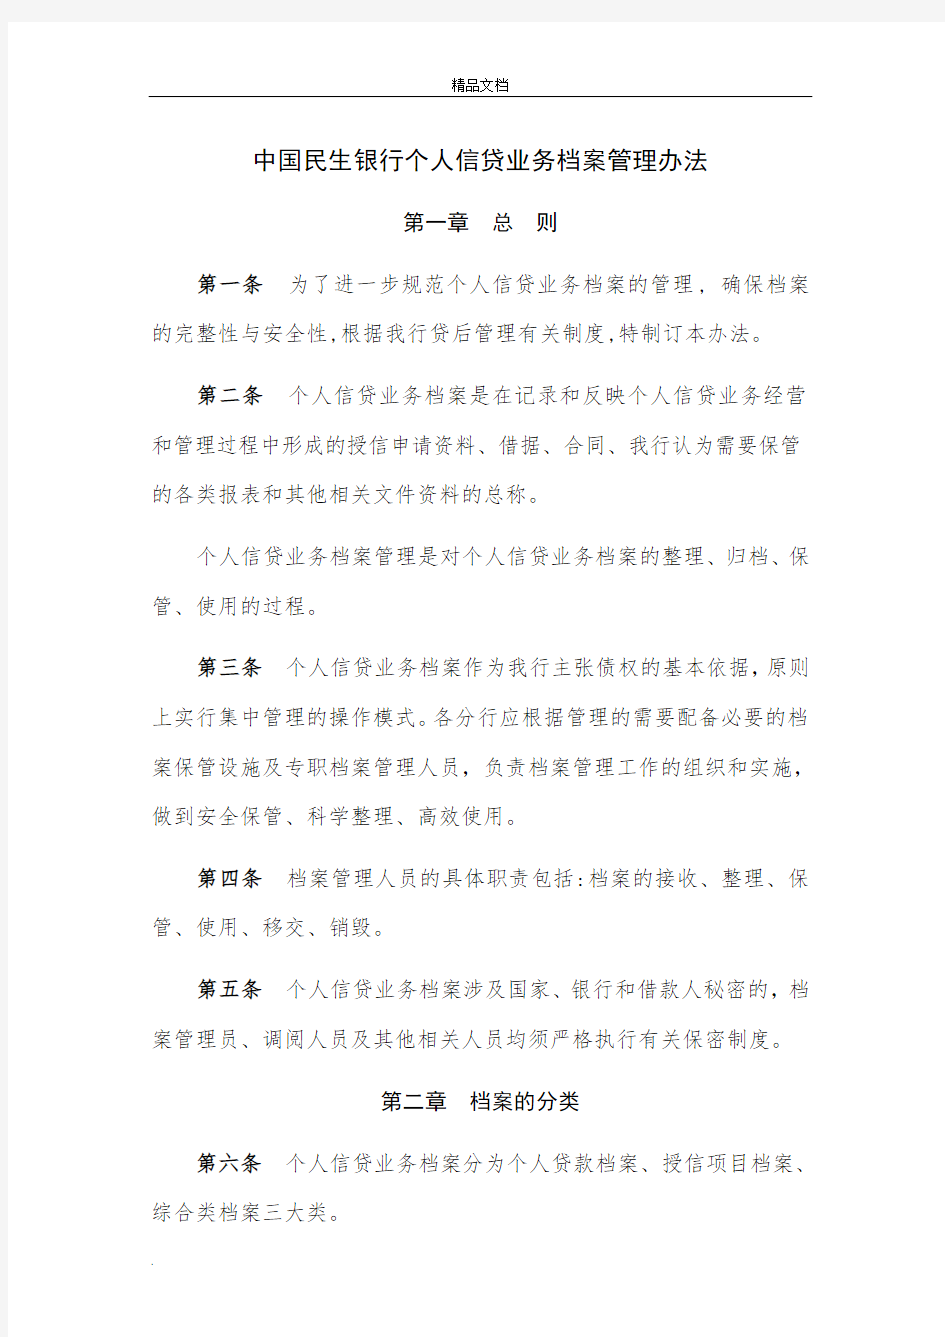 中国民生银行个人信贷业务档案管理办法